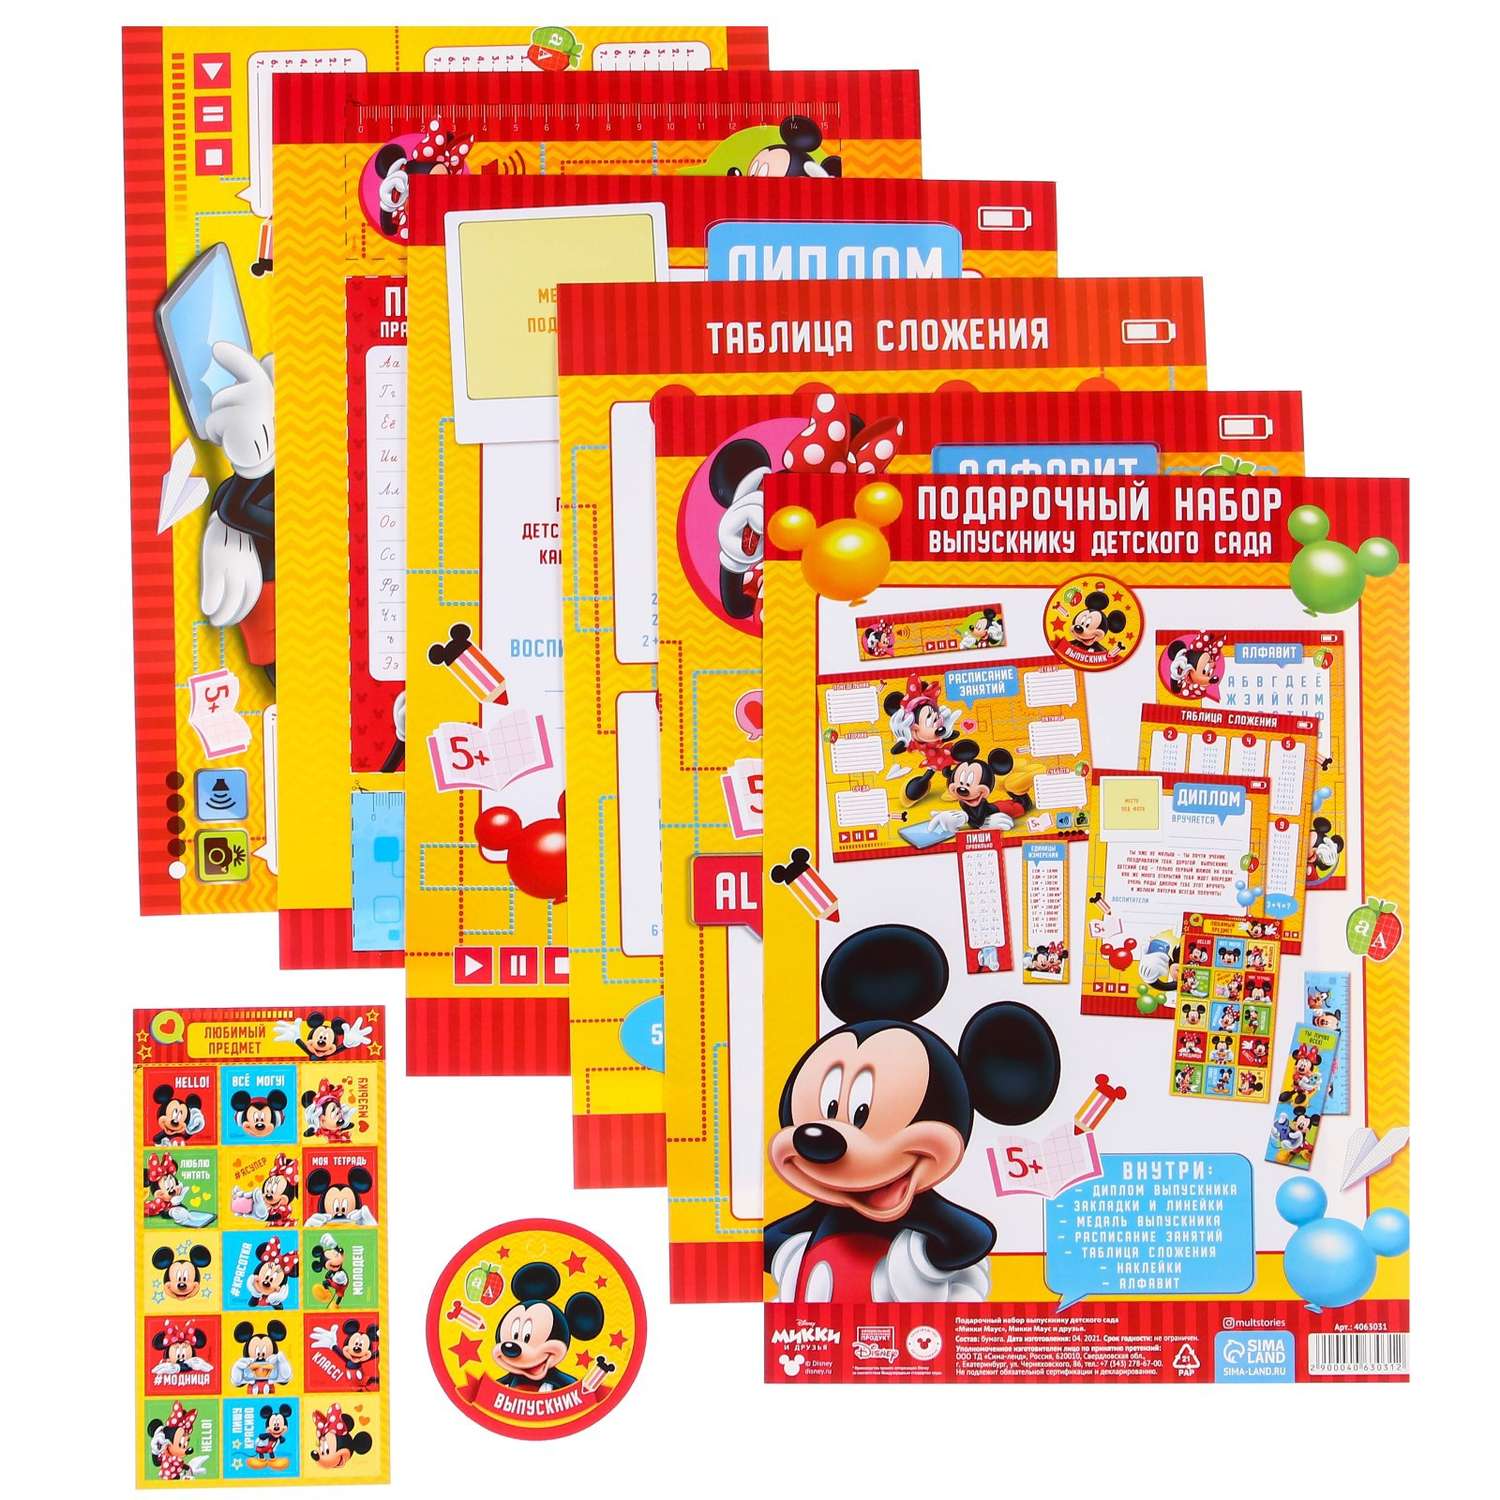 Подарочный набор Disney выпускнику детского сада «Микки Маус» Микки Маус и друзья - фото 1